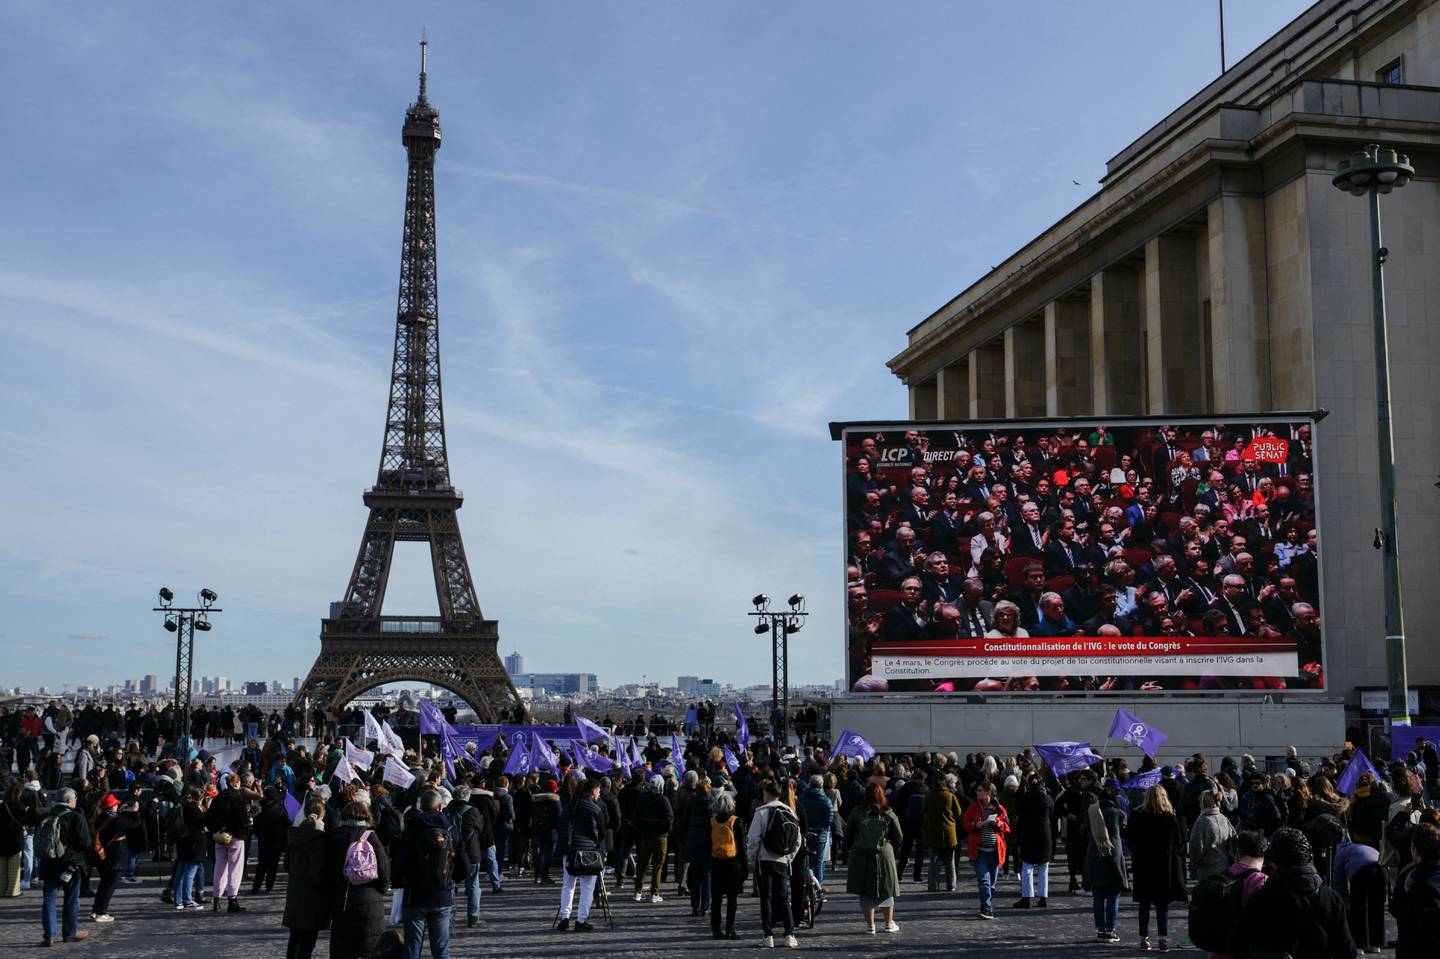 La gente se reúne cerca de la Torre Eiffel en la Place du Trocadero de París, durante la retransmisión de la convocatoria de ambas cámaras del parlamento para anclar el derecho al aborto en la constitución del país.